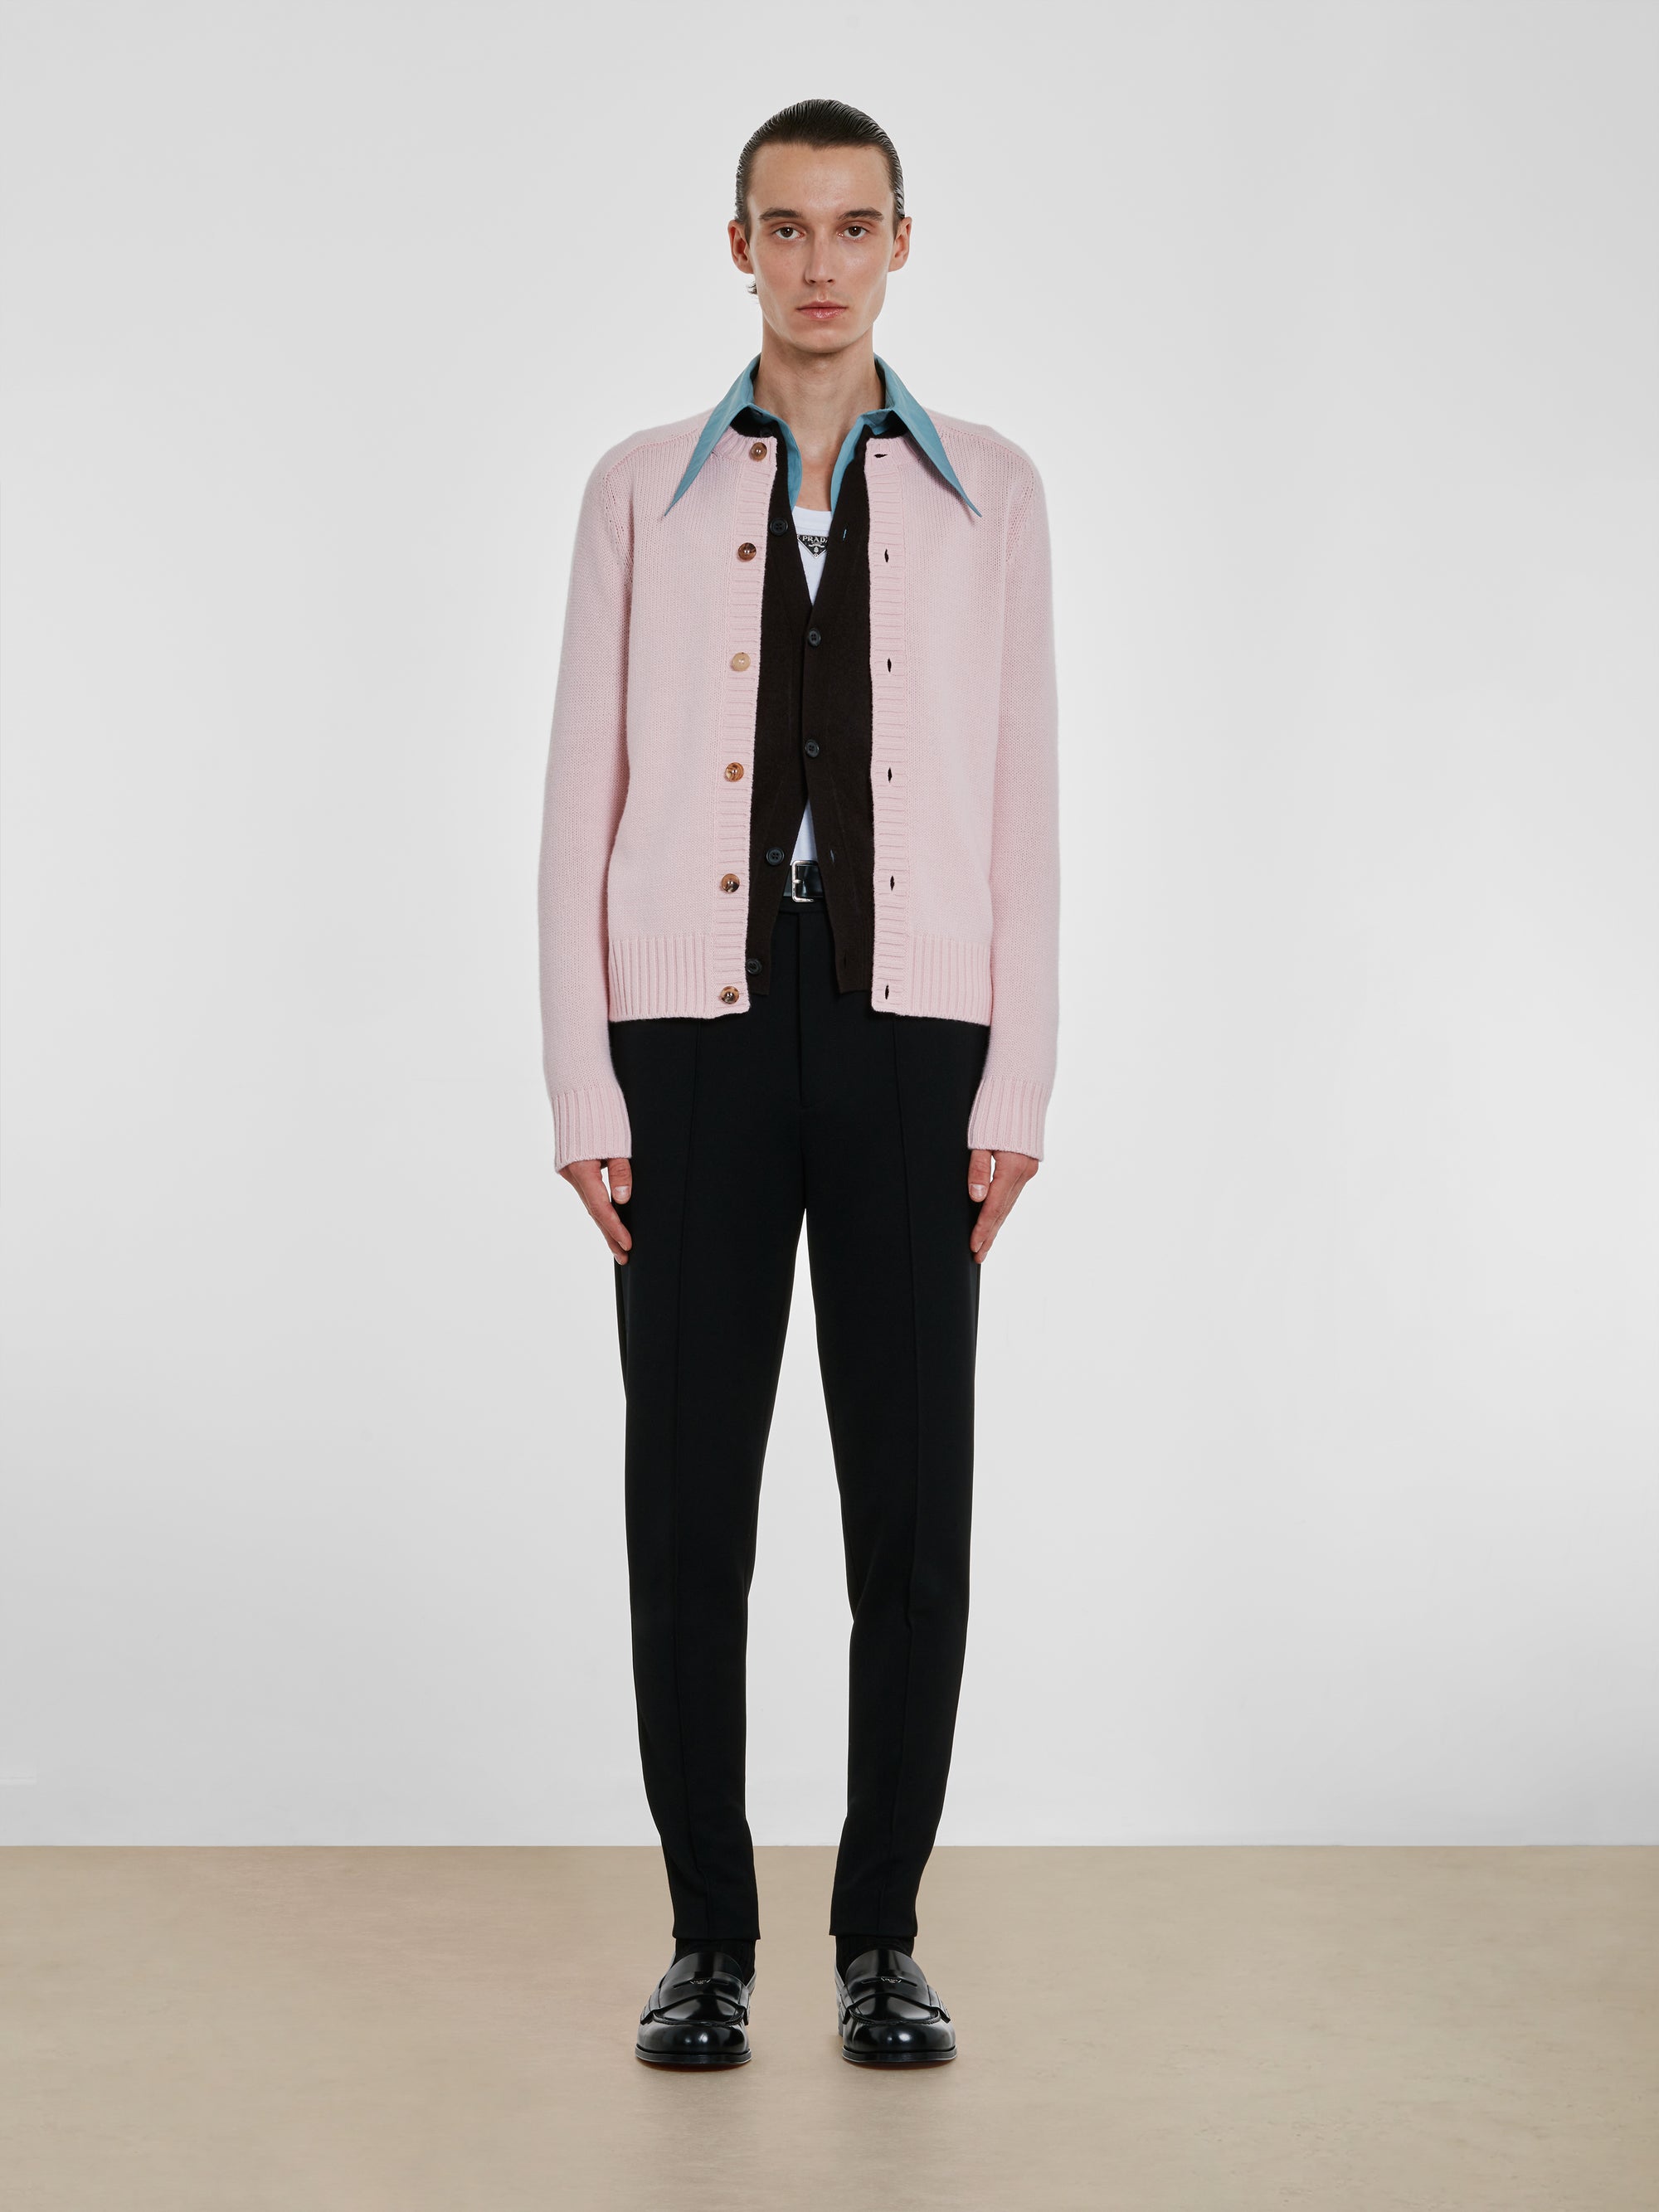 Prada - Men’s Wool and Cashmere Cardigan - (Alabaster Pink) view 4